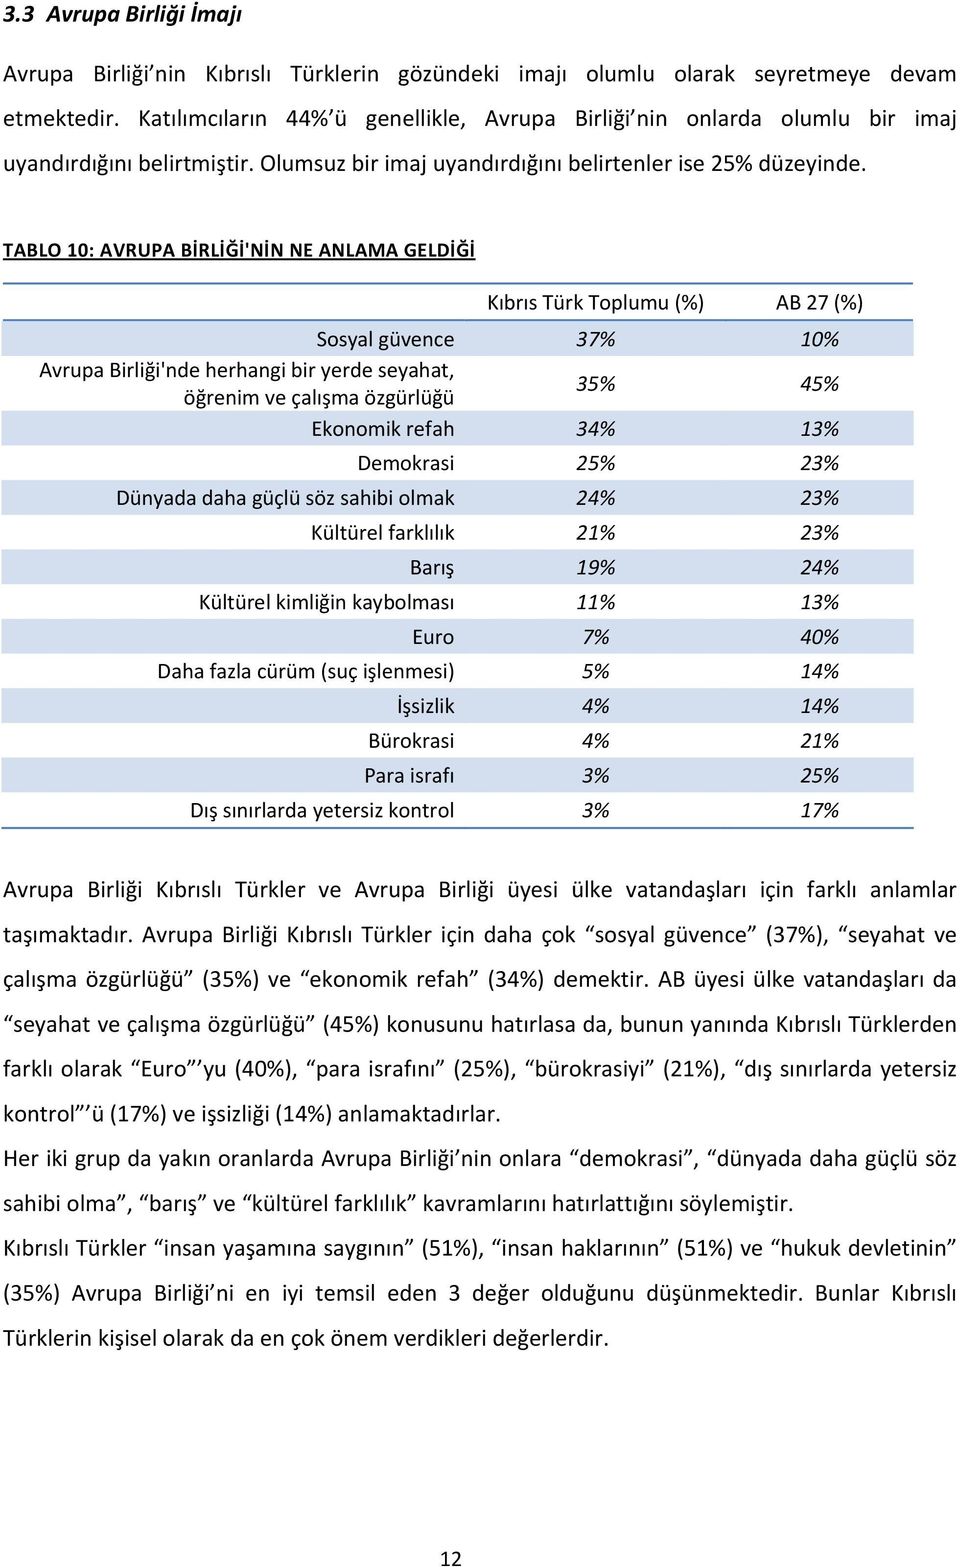 TABLO 10: AVRUPA BİRLİĞİ'NİN NE ANLAMA GELDİĞİ Kıbrıs Türk Toplumu (%) AB 27 (%) Sosyal güvence 37% 10% Avrupa Birliği'nde herhangi bir yerde seyahat, öğrenim ve çalışma özgürlüğü 35% 45% Ekonomik